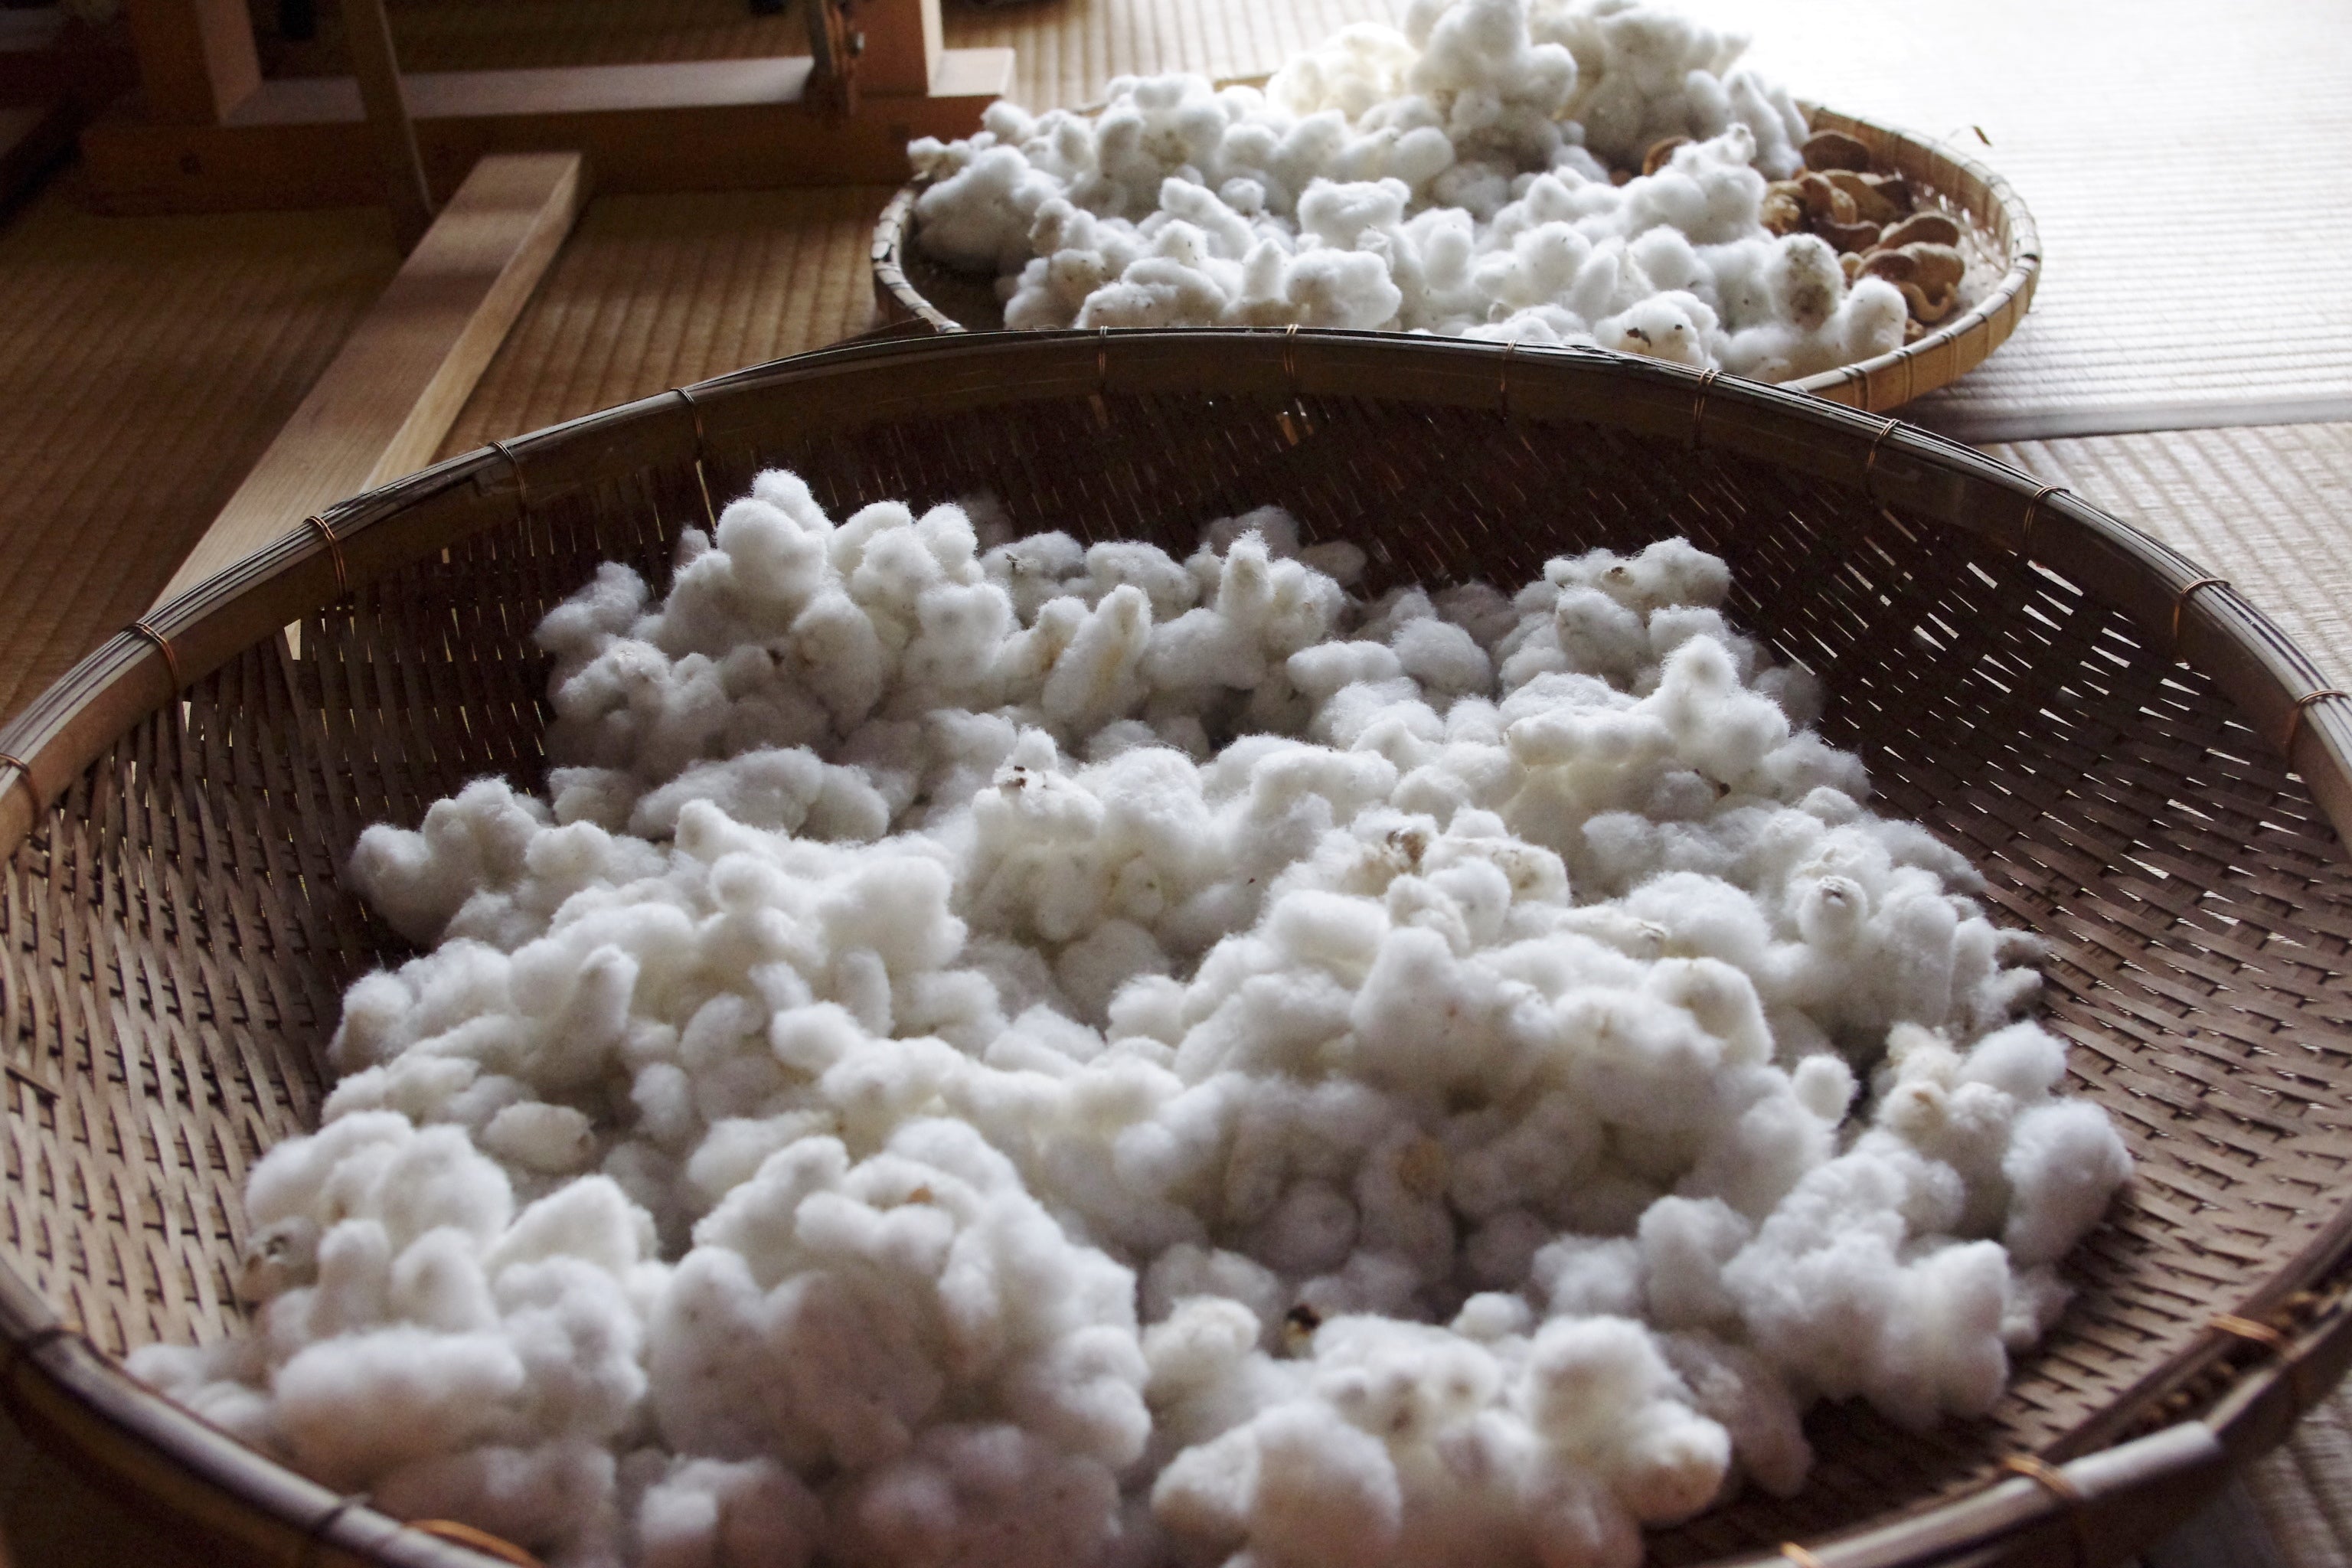 ふわふわとした触り心地、綿の優しい香り、それが和綿の特徴です。弊社では、オーガニックコットンを国内で栽培し、徹底的に無農薬で育てています。私たちは環境にやさしい栽培方法を採用し、土壌や水源を守りながら、豊かな自然の力だけで和綿を作り上げています。身につける方々に安心と快適さを提供するために、品質にこだわり繊細な糸を丹念に紡ぎ上げています。ぜひ、和綿の魅力をご体感ください。わたから わたからつむぐ マインド松井 日本の綿 わた 和綿 綿 和綿とは コットン コットンとは コットン１００％ オーガニックコットン 日用品 商品 無農薬 わめん 育て方 種類 洋綿 綿花 エコ エシカル エシカル商品 サスティナブル 糸紡ぎ 収穫 特徴 綿摘み 種 販売 豊か 暮らし 豊かな暮らし 生活 ガラ紡 コットン 生地 おすすめ 収穫 国産和綿 国産の綿 国産 生産地 自社畑 生地 岐阜 熊本 綿 わた コットン オーガニックコットン 綿１００％　コットン１００％　オーガニックコットン１００％ 綿 わた コットン オーガニックコットン 綿１００％　コットン１００％　オーガニックコットン１００％